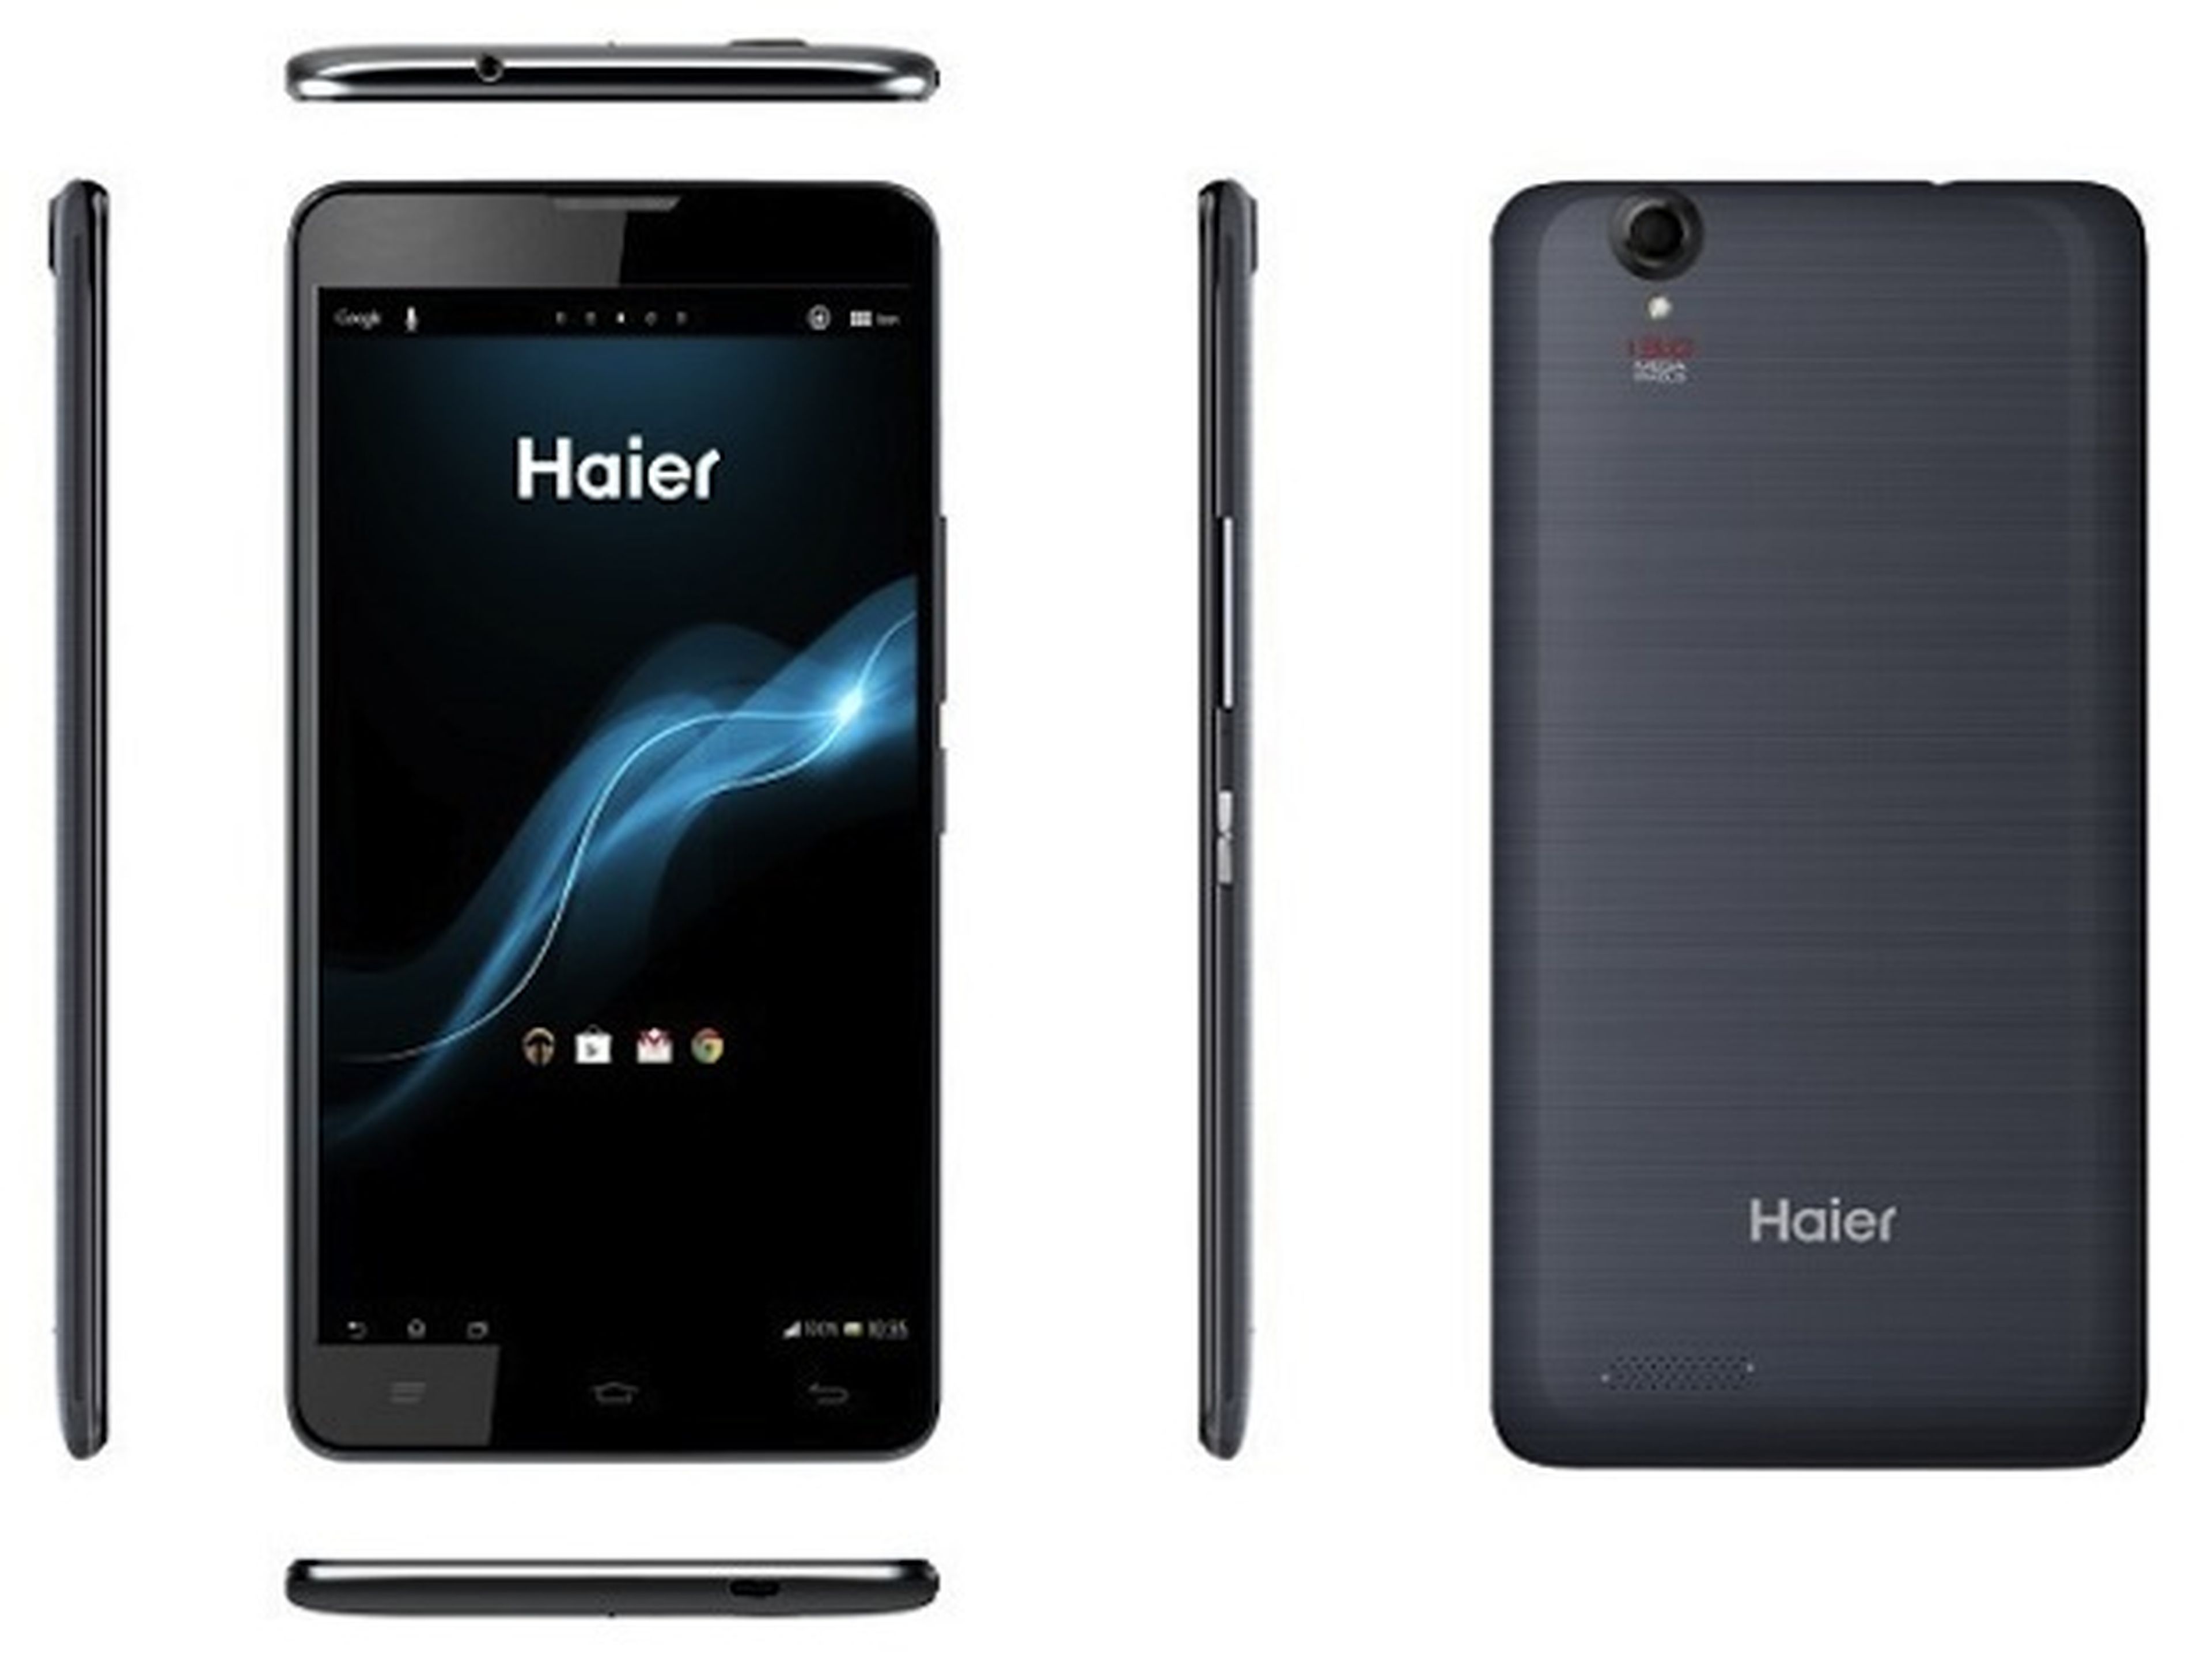 HaierPhone W990